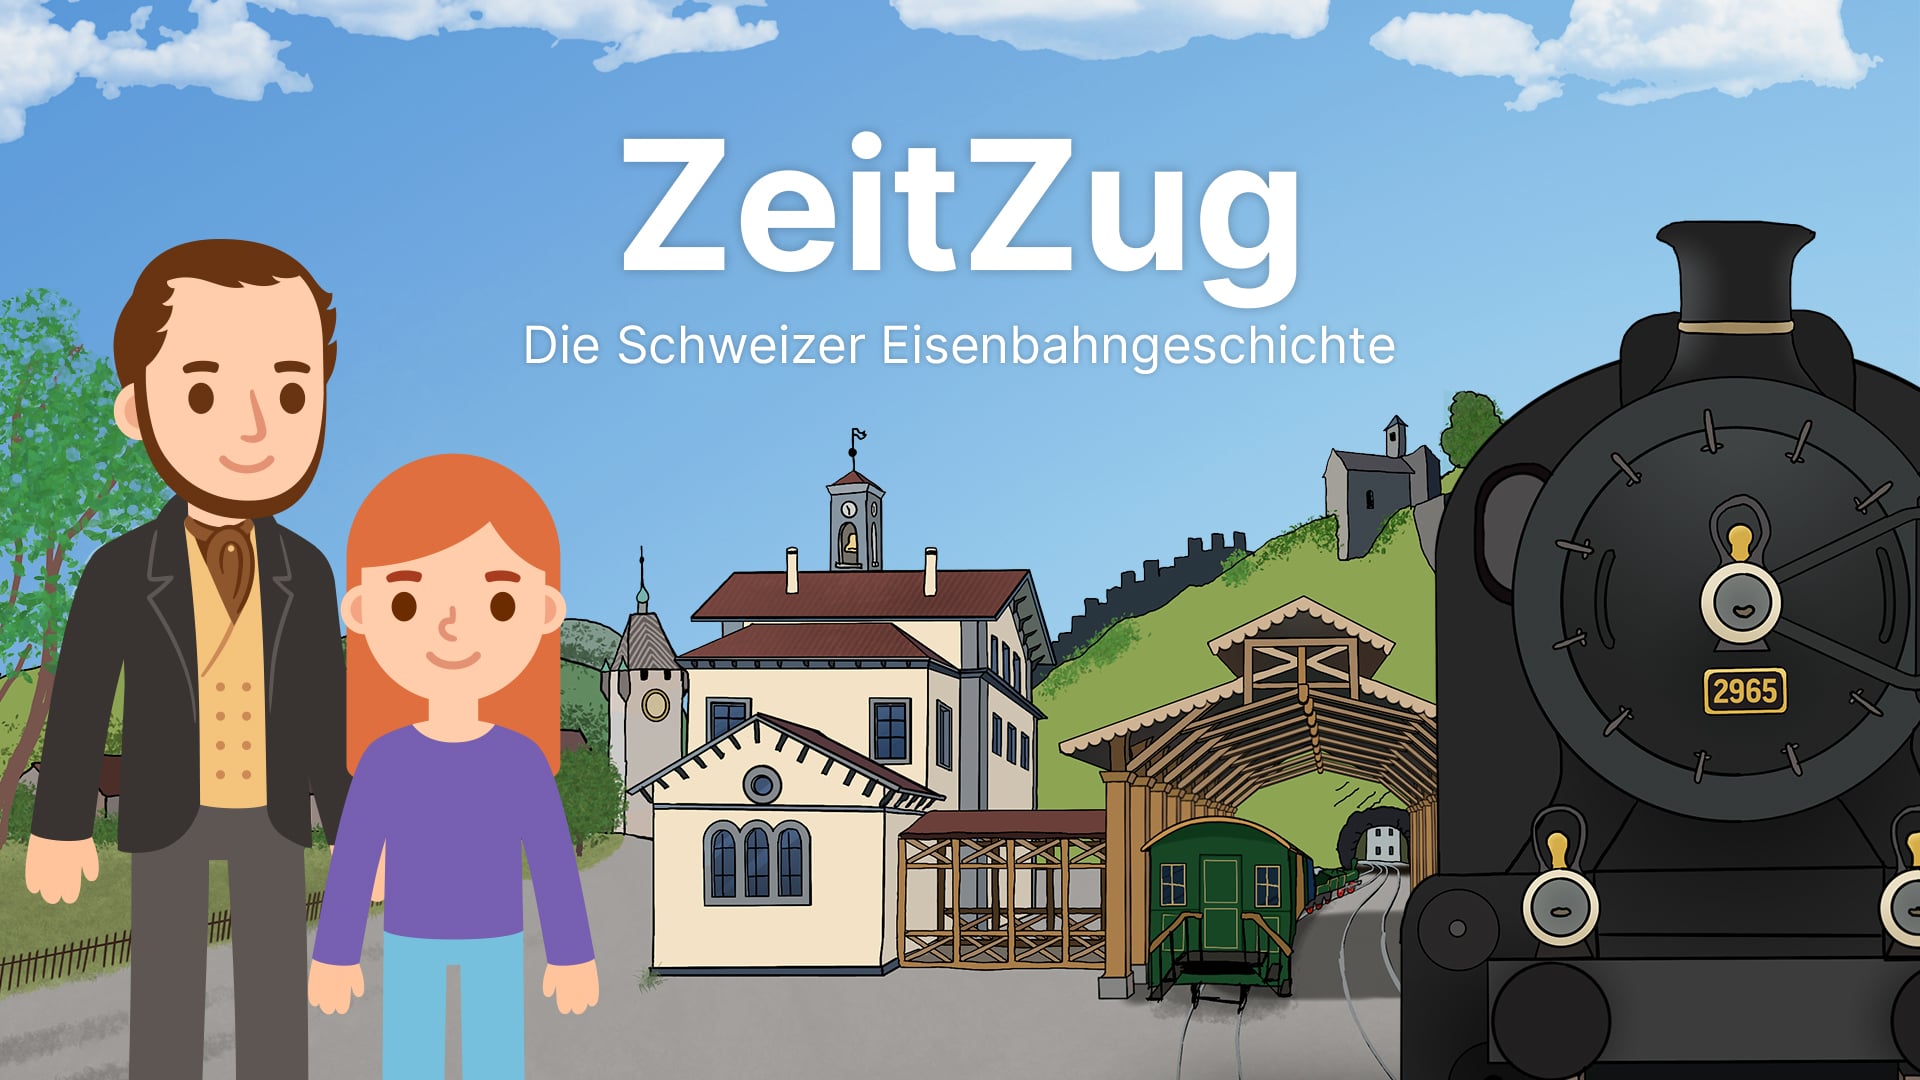 Sara und Alfred Escher stehen in Baden, darüber den Schriftzug "ZeitZug"